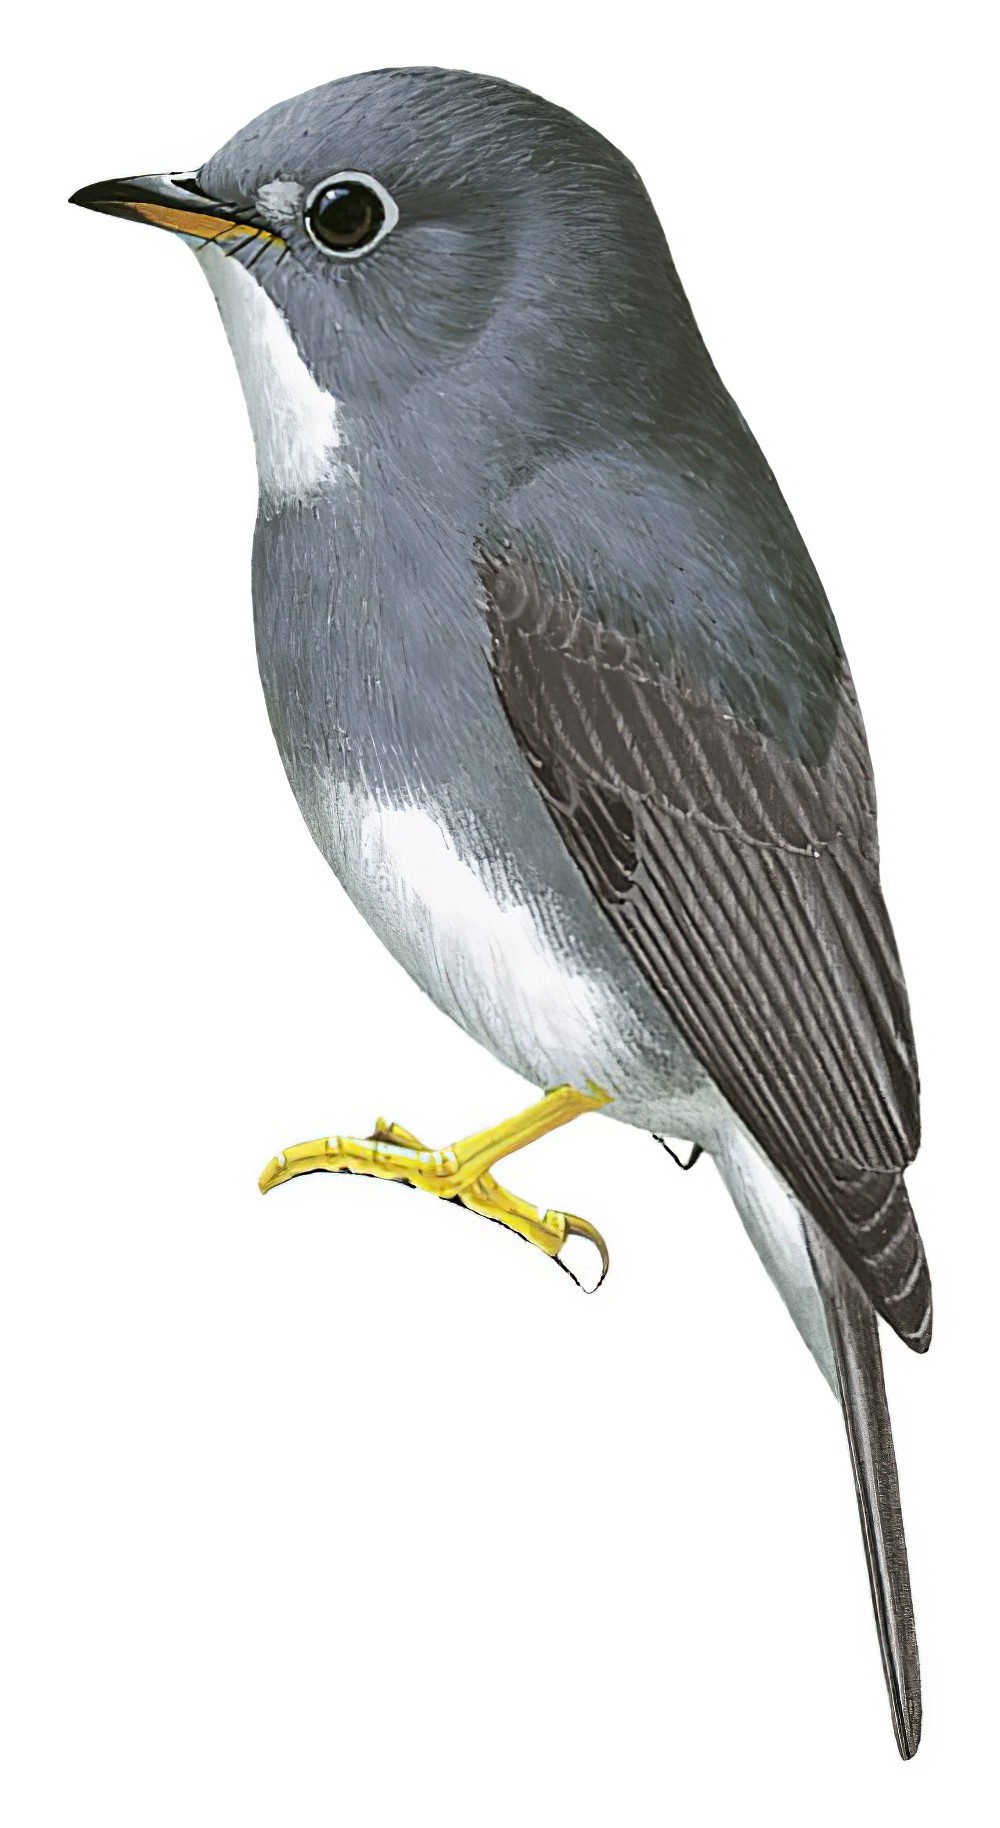 黄脚鹟 / Yellow-footed Flycatcher / Muscicapa sethsmithi